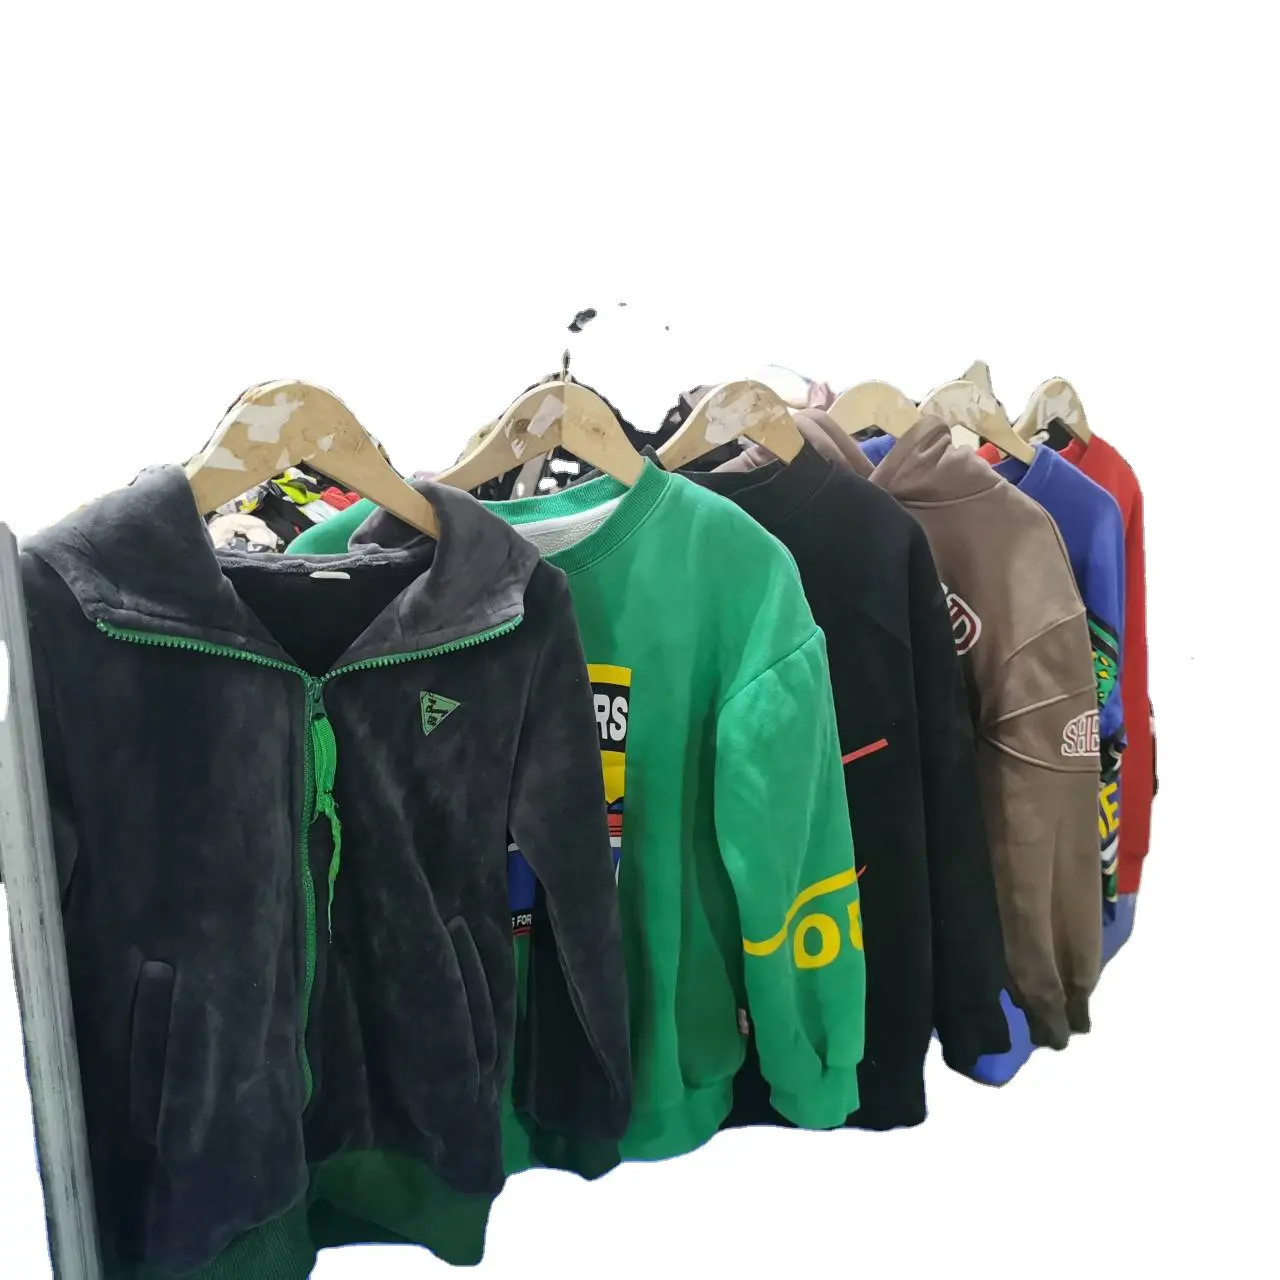 공급 업체 도매 하이 퀄리티 두 번째 손 여자 의류 사용 의류 브랜드 재킷 및 후드 베일